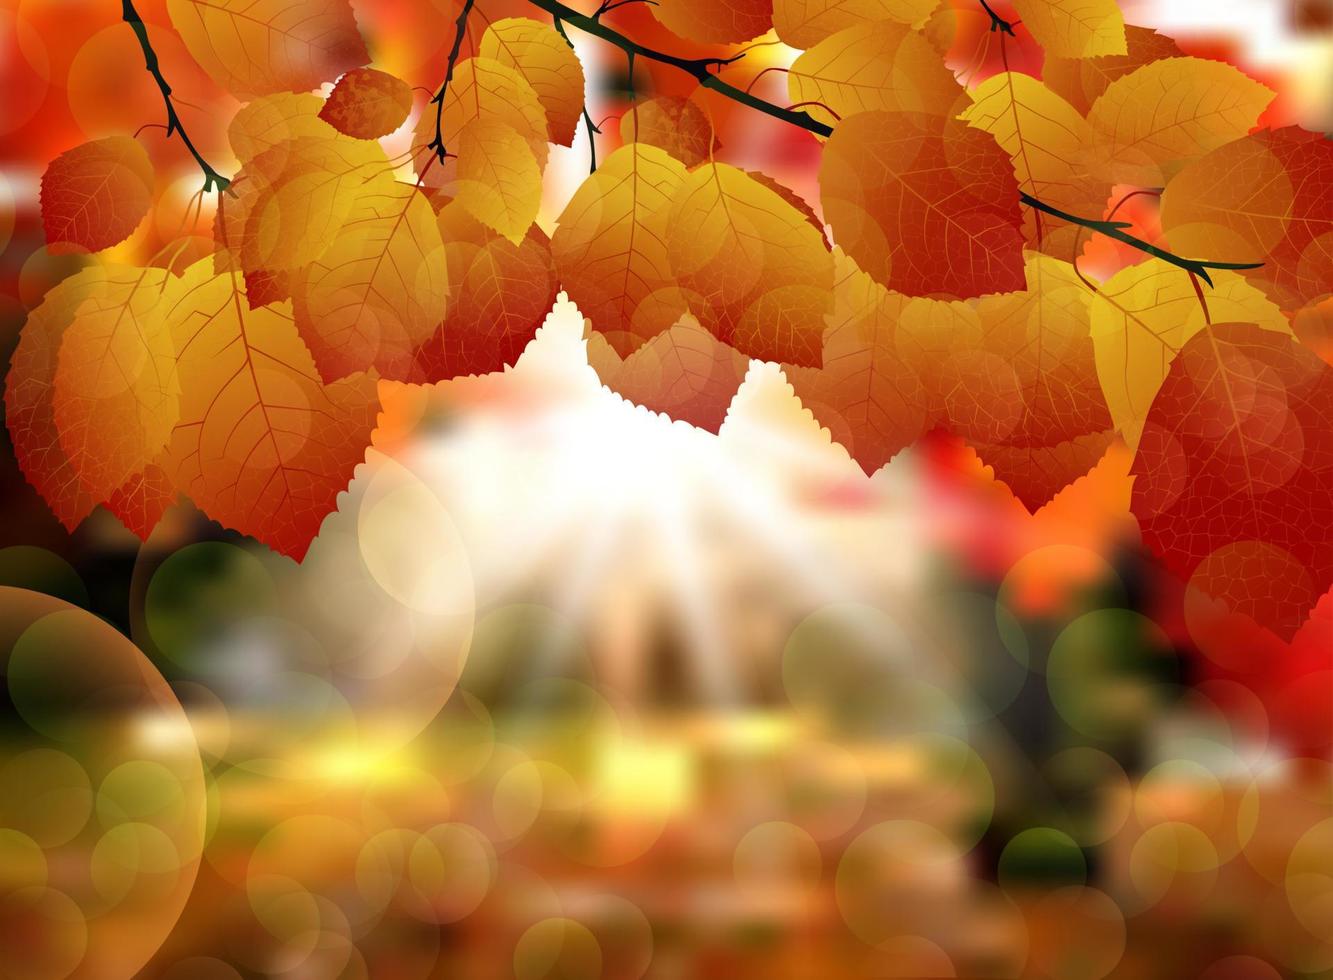 herfstbladeren achtergrond vector